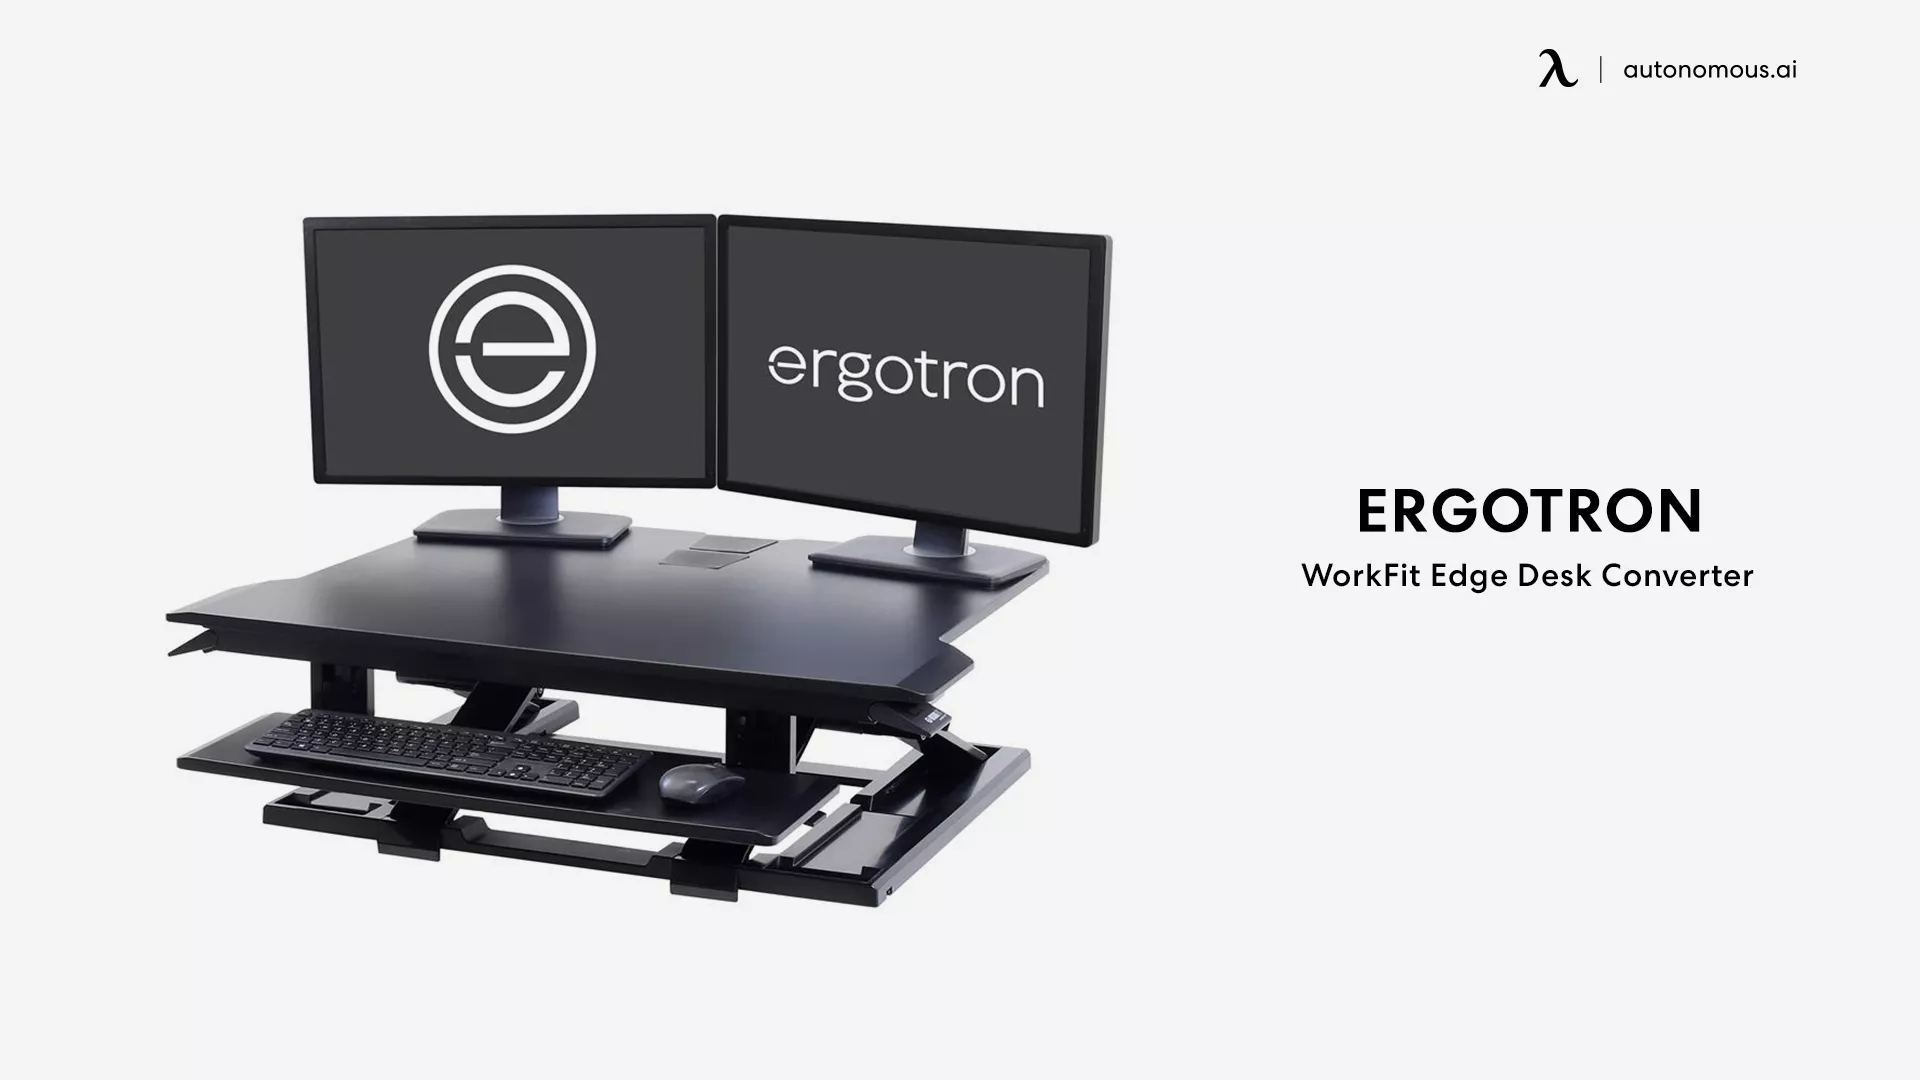 WorkFit Edge Standing Desk Converter by Ergotron